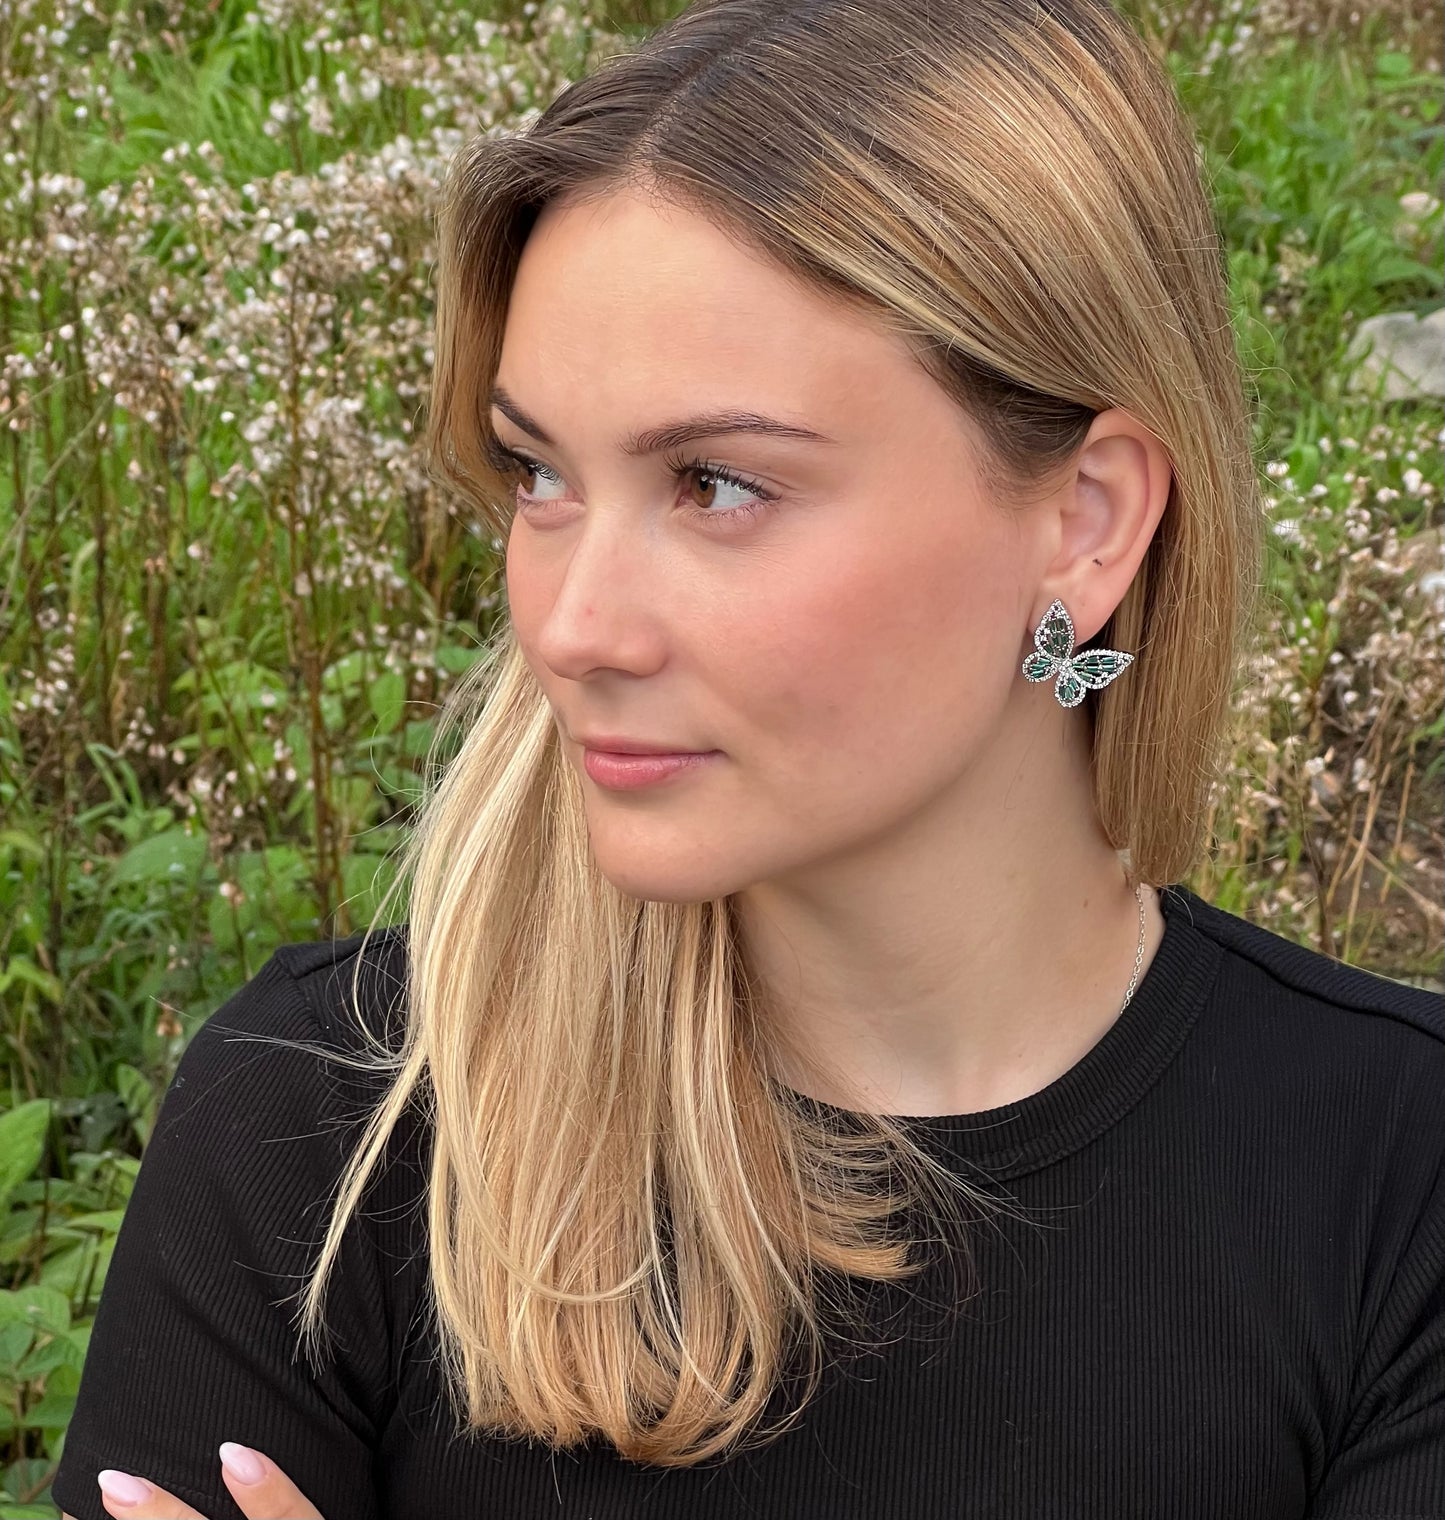 Emerald butterfly earrings